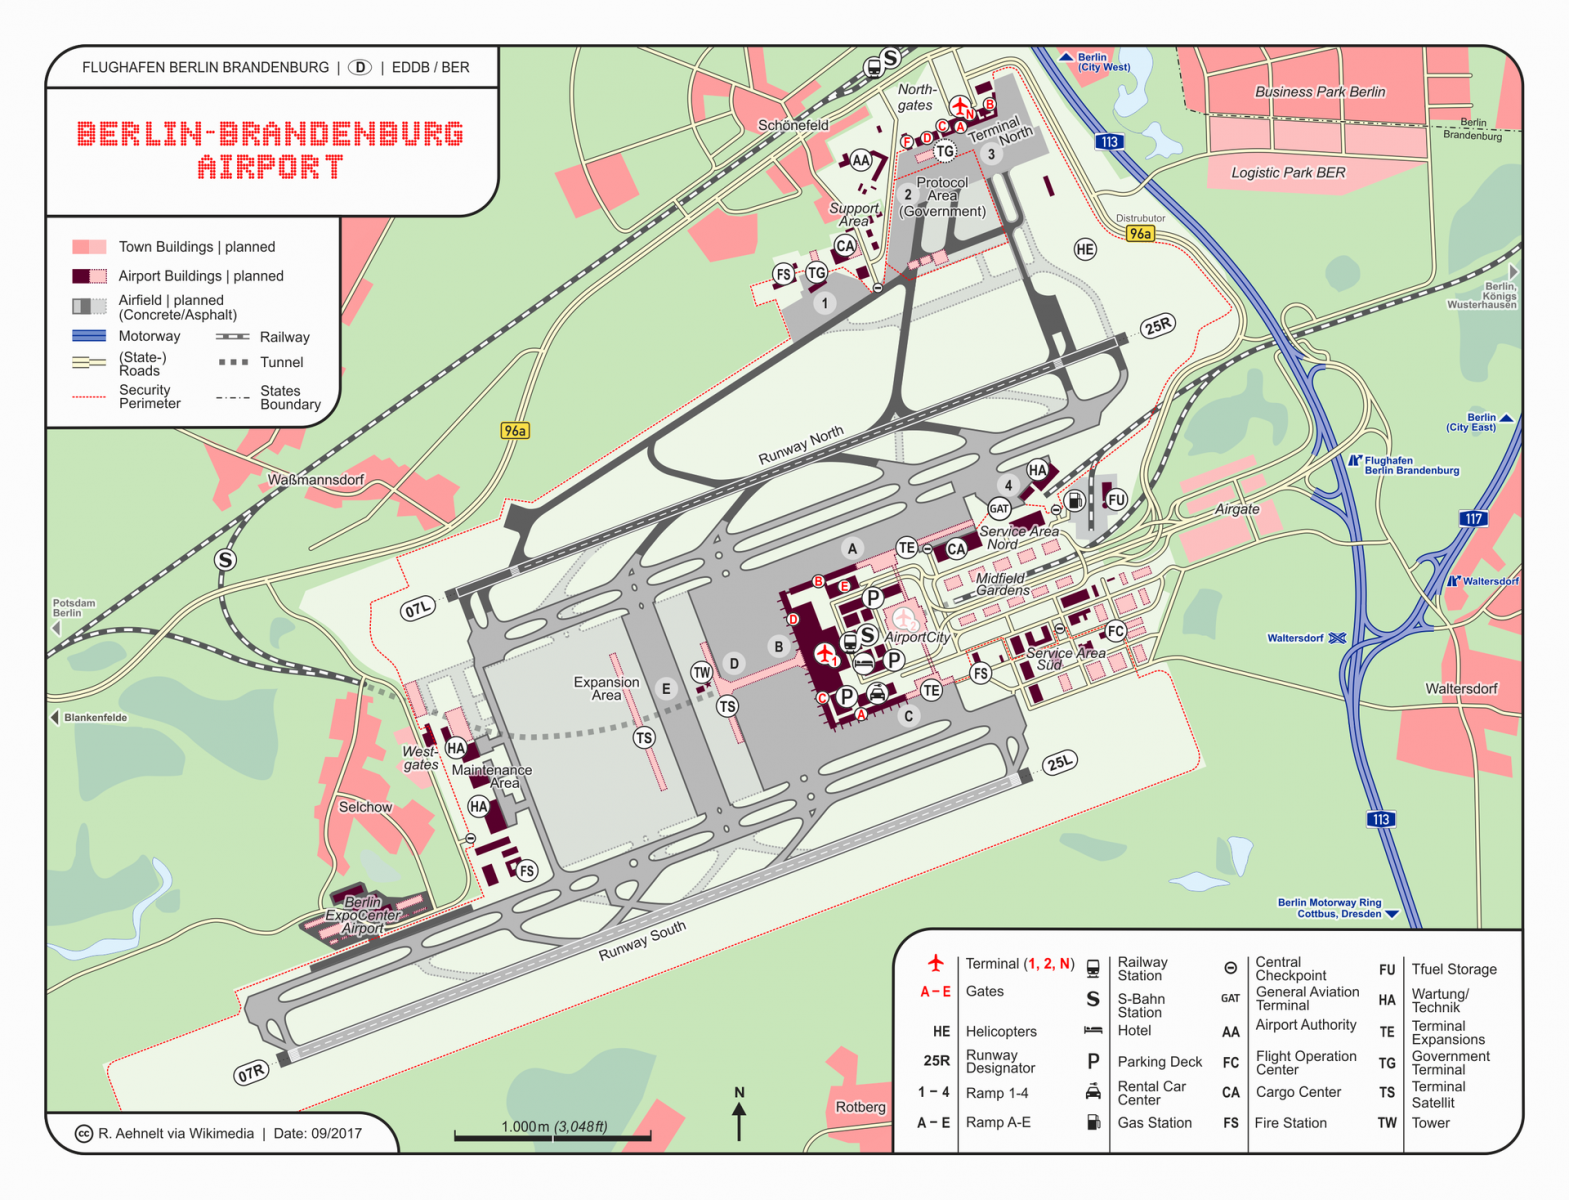 BER - pijnlijke saga van het megalomaan luchthavenproject in Berlijn dat gründlich mislukt